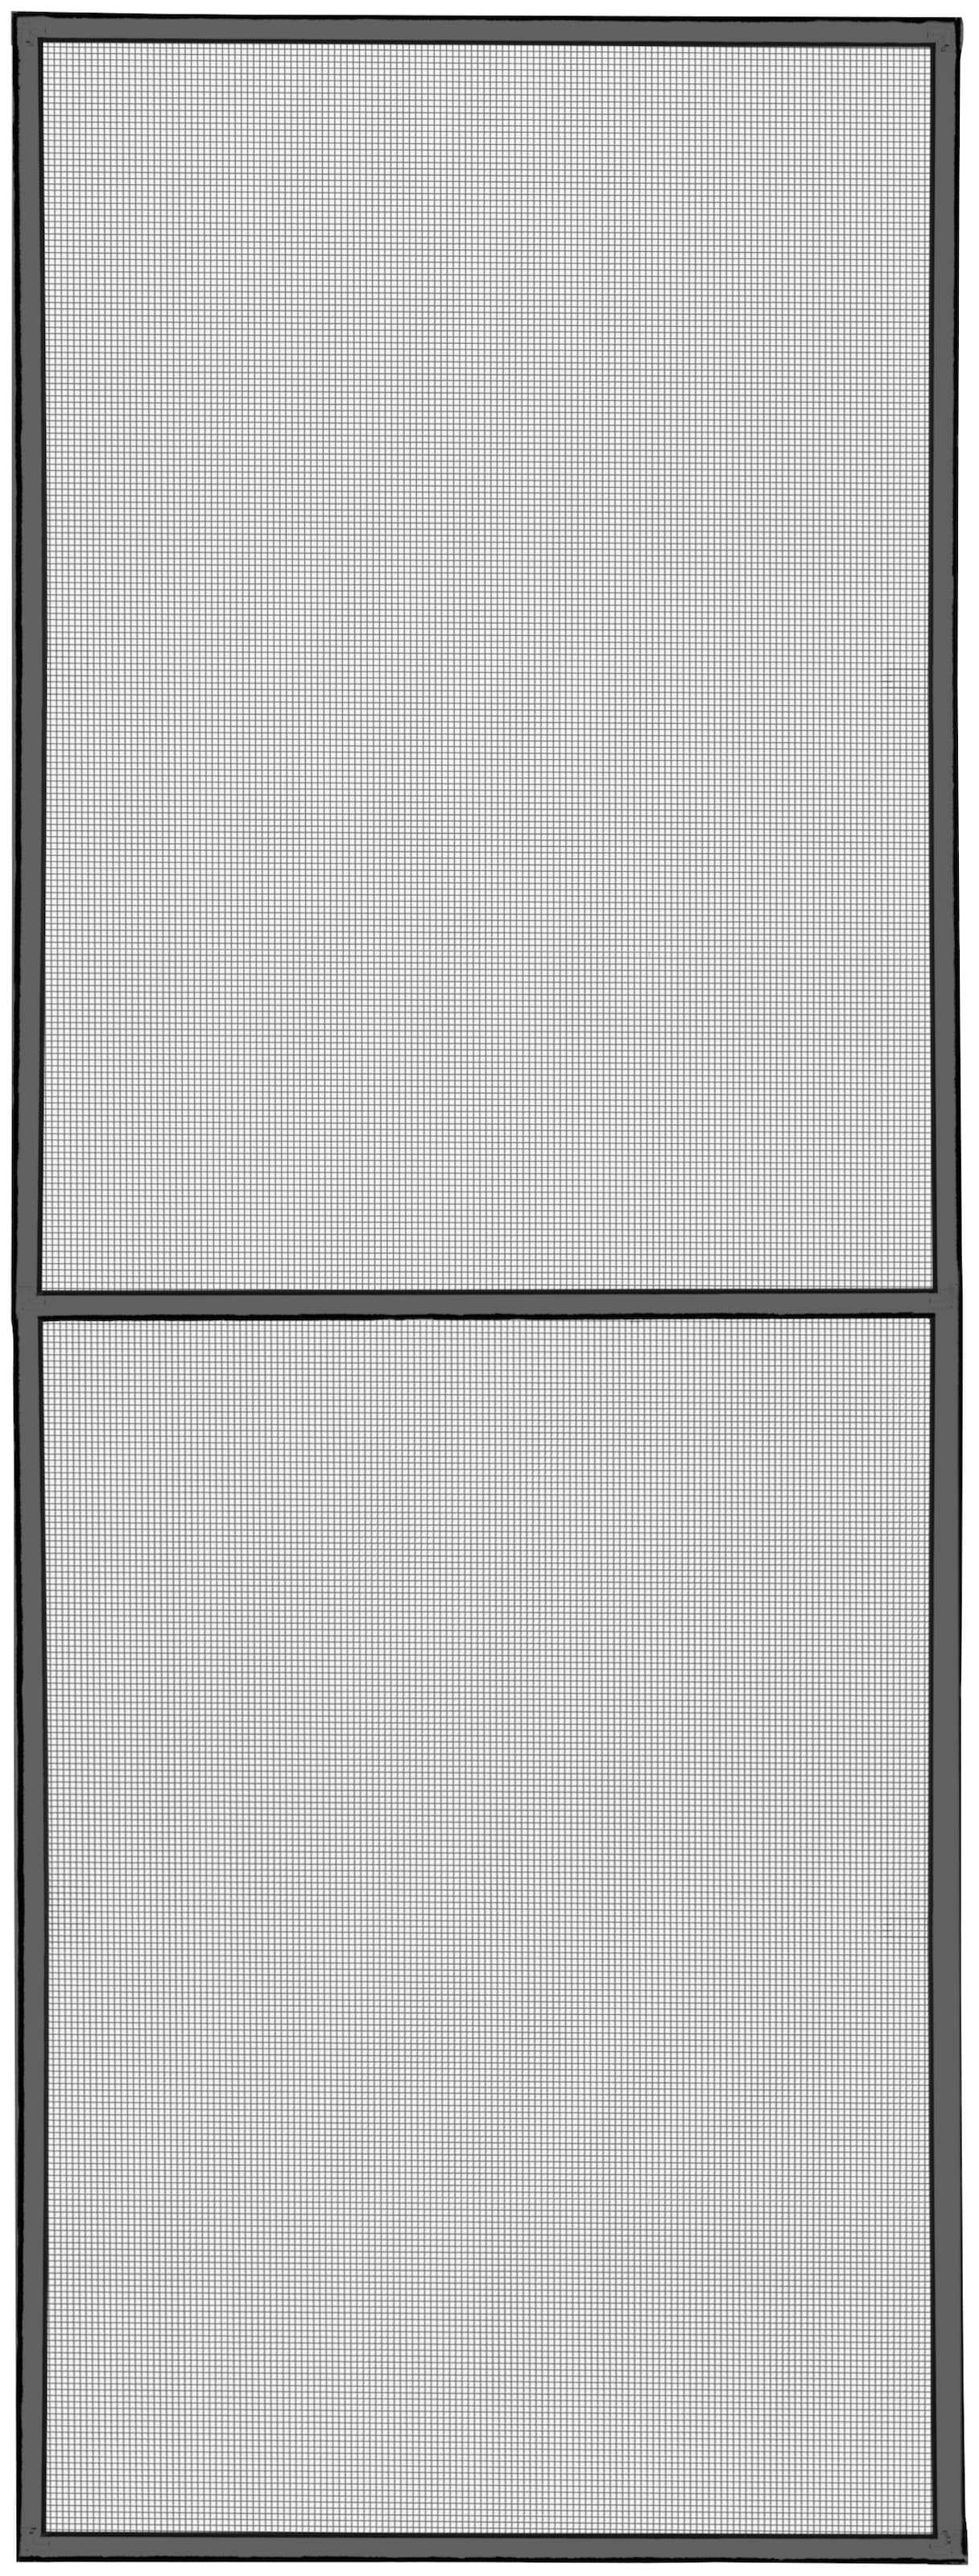 SCHELLENBERG Insektenschutz-Fensterrahmen »Premium für bodentiefe Fenster«, Fliegengitter mit Rahmen aus Aluminium, 120 x 240 cm, anthrazit, 70045